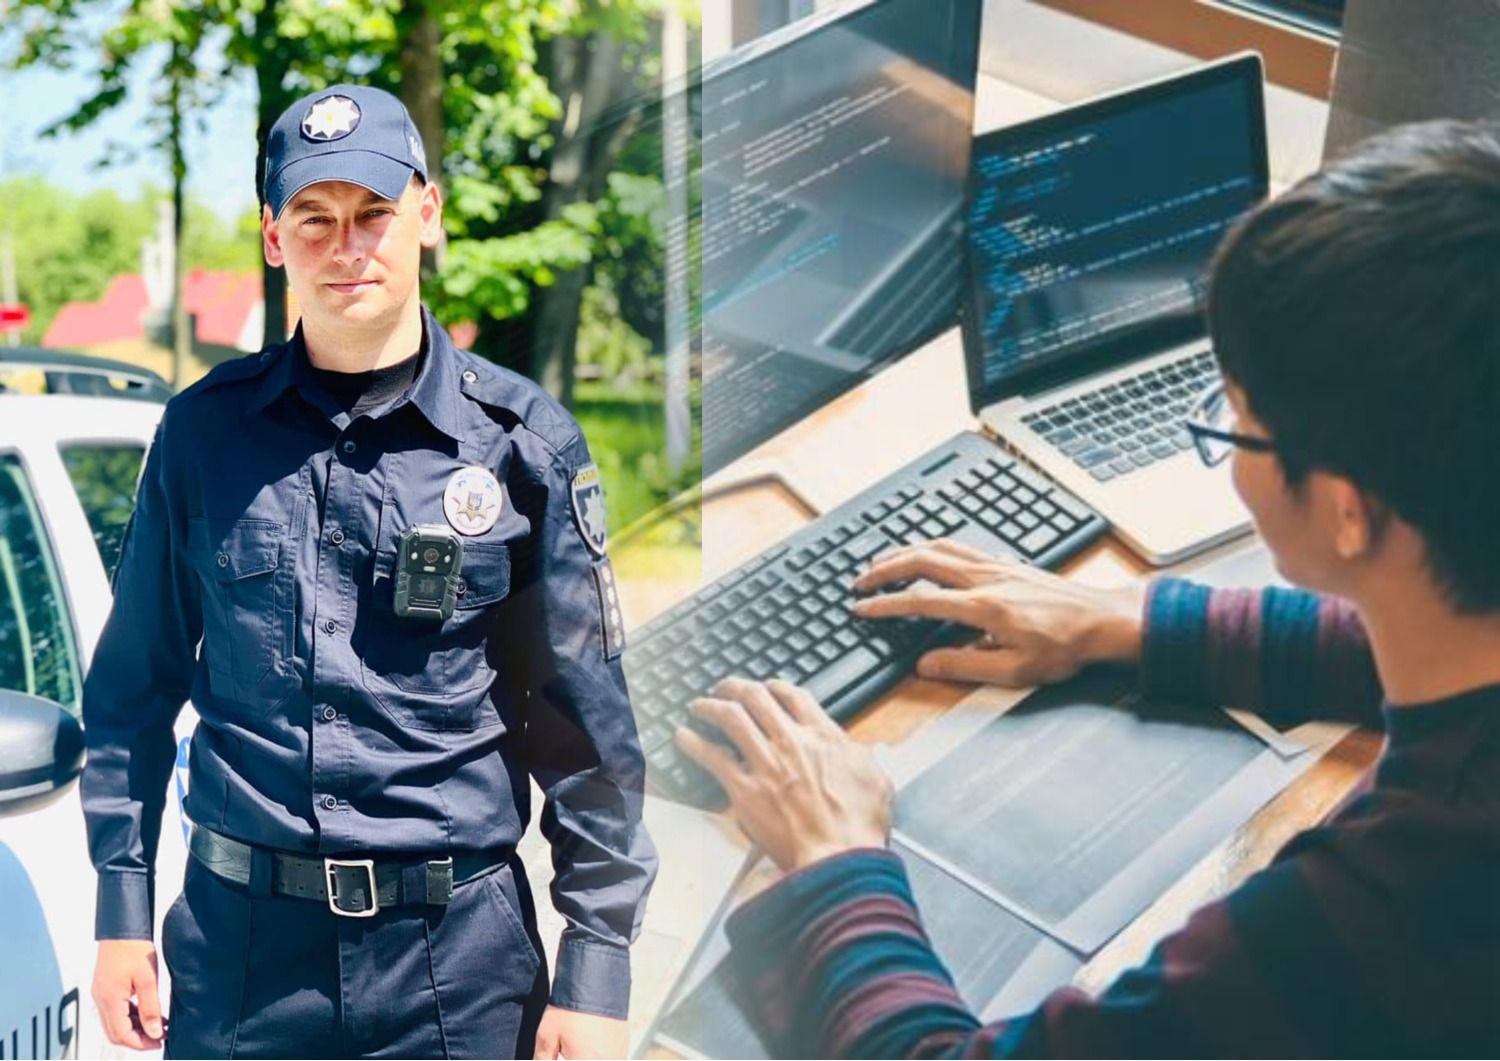 Как на украинском назвать ИТ-шника и полицейского - правильные варианты названий профессий